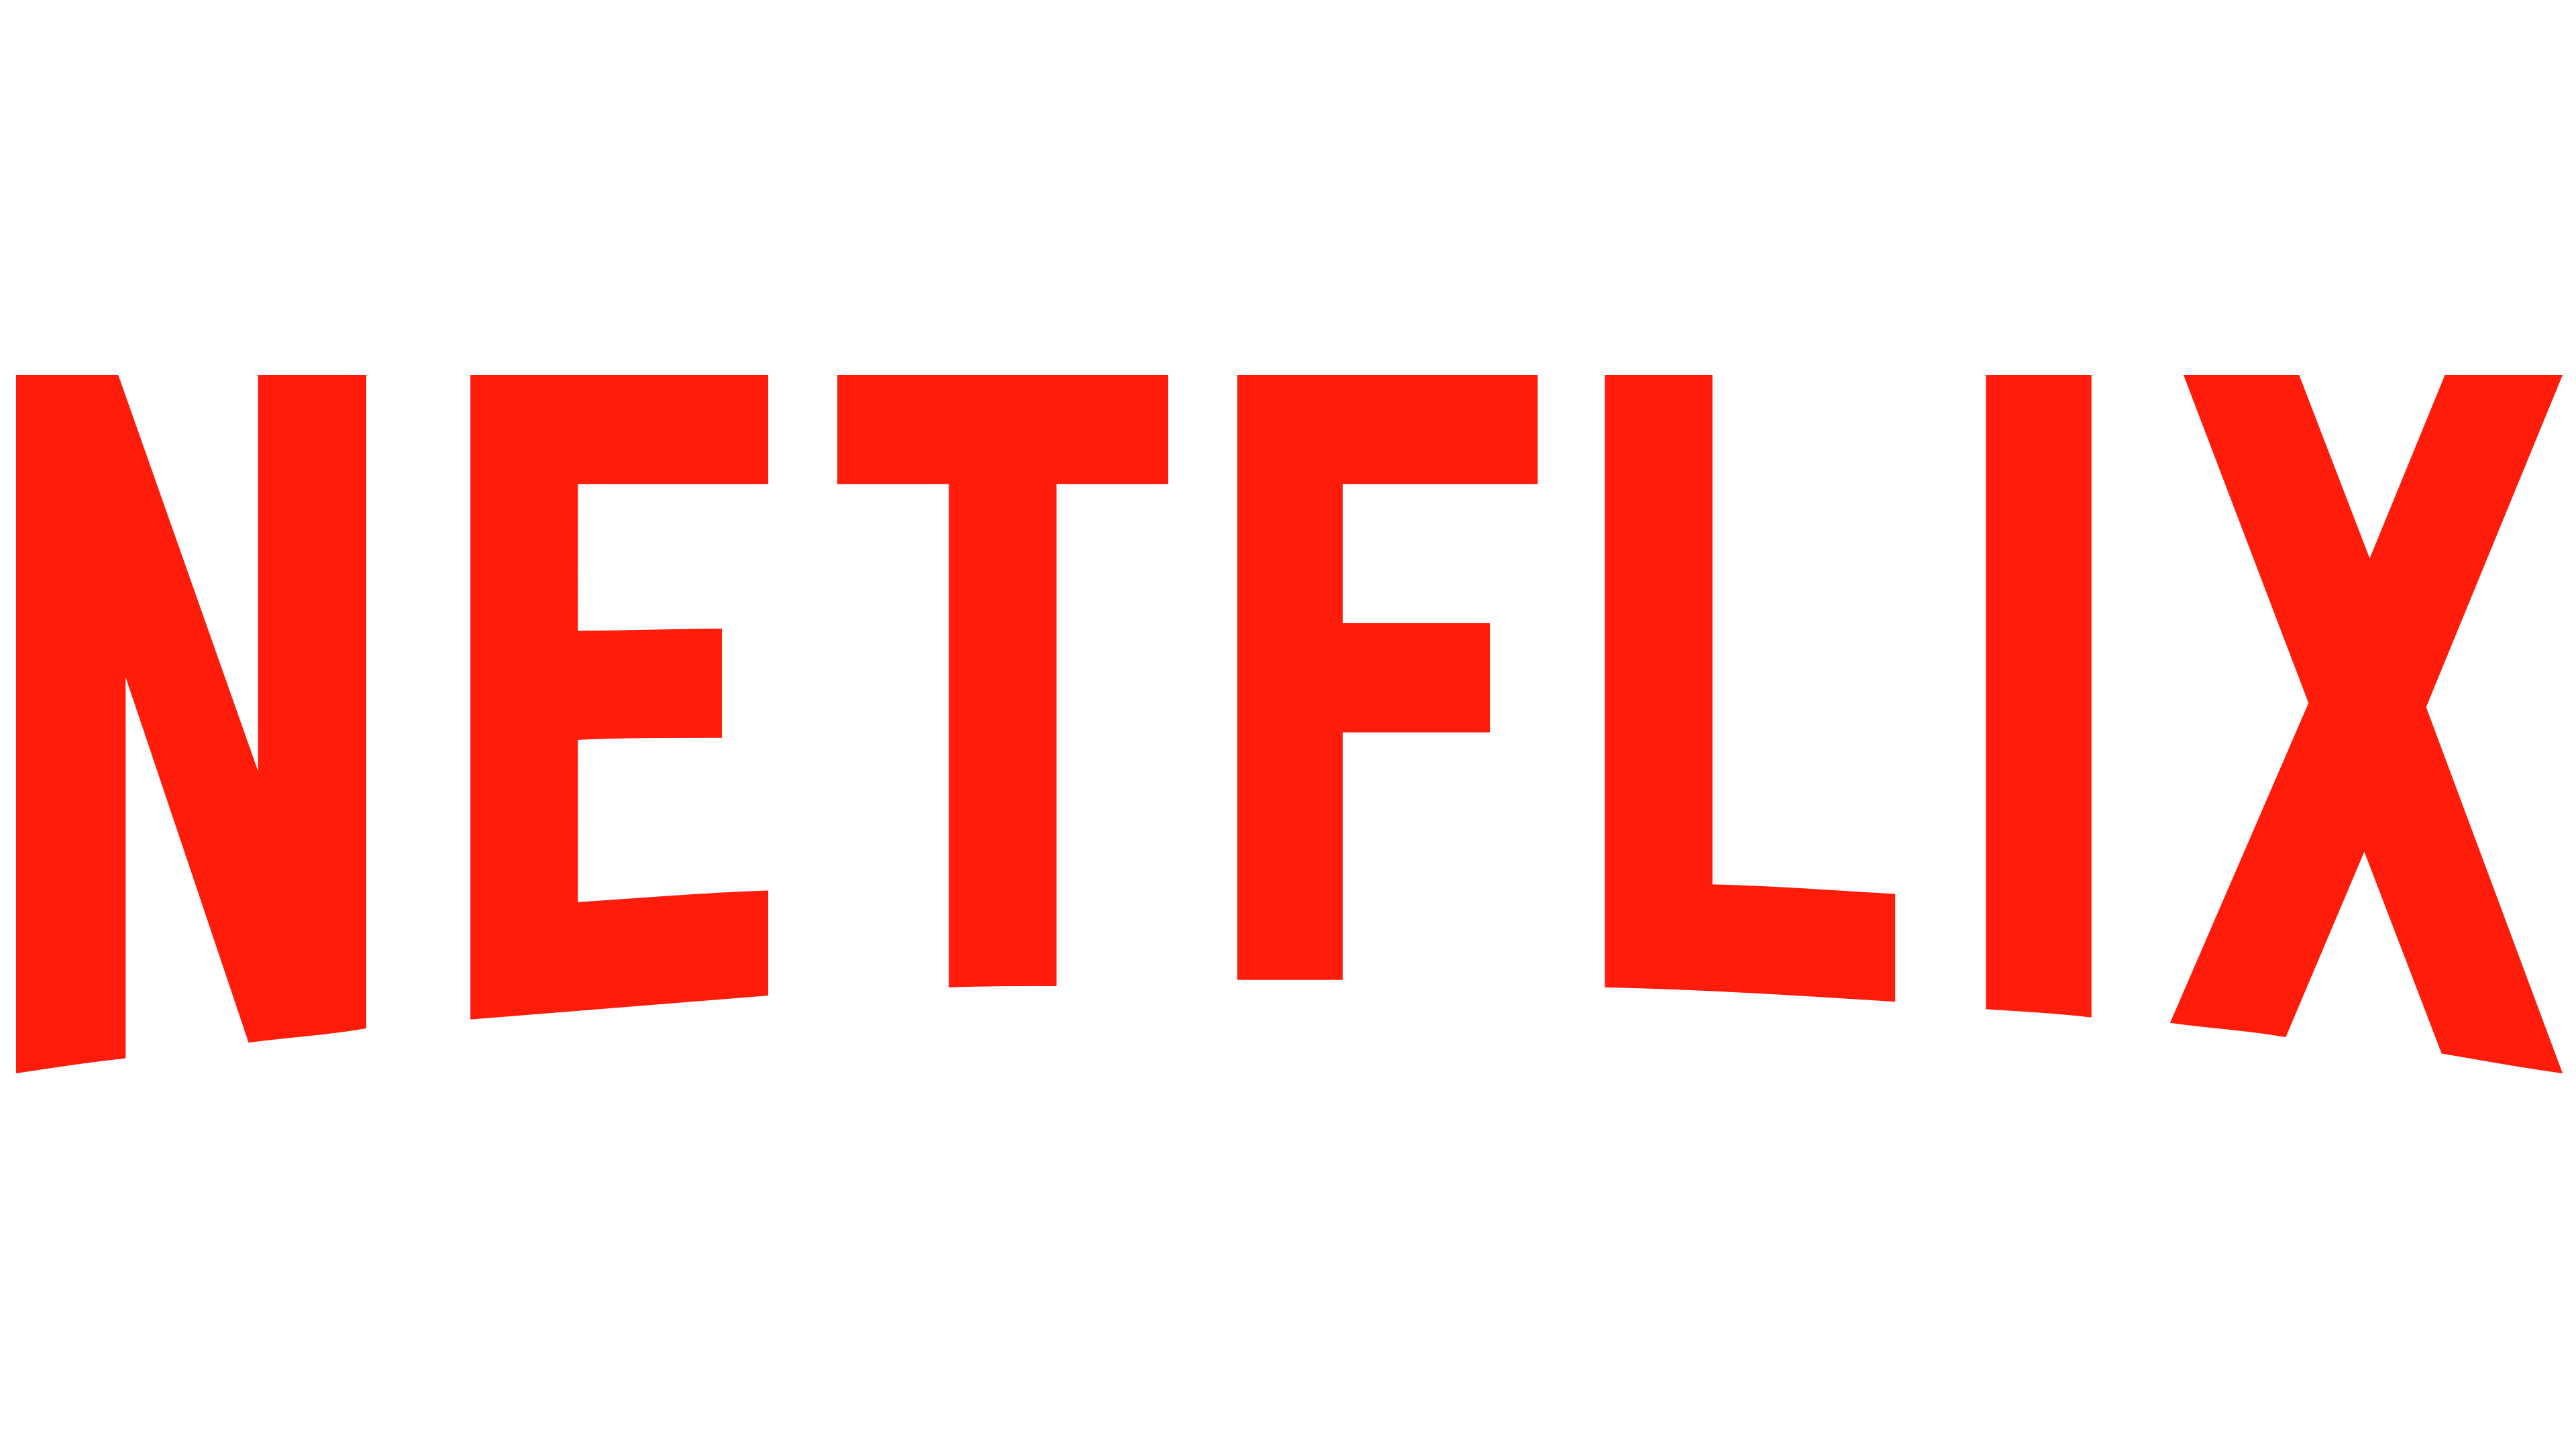 How to change language on Netflix